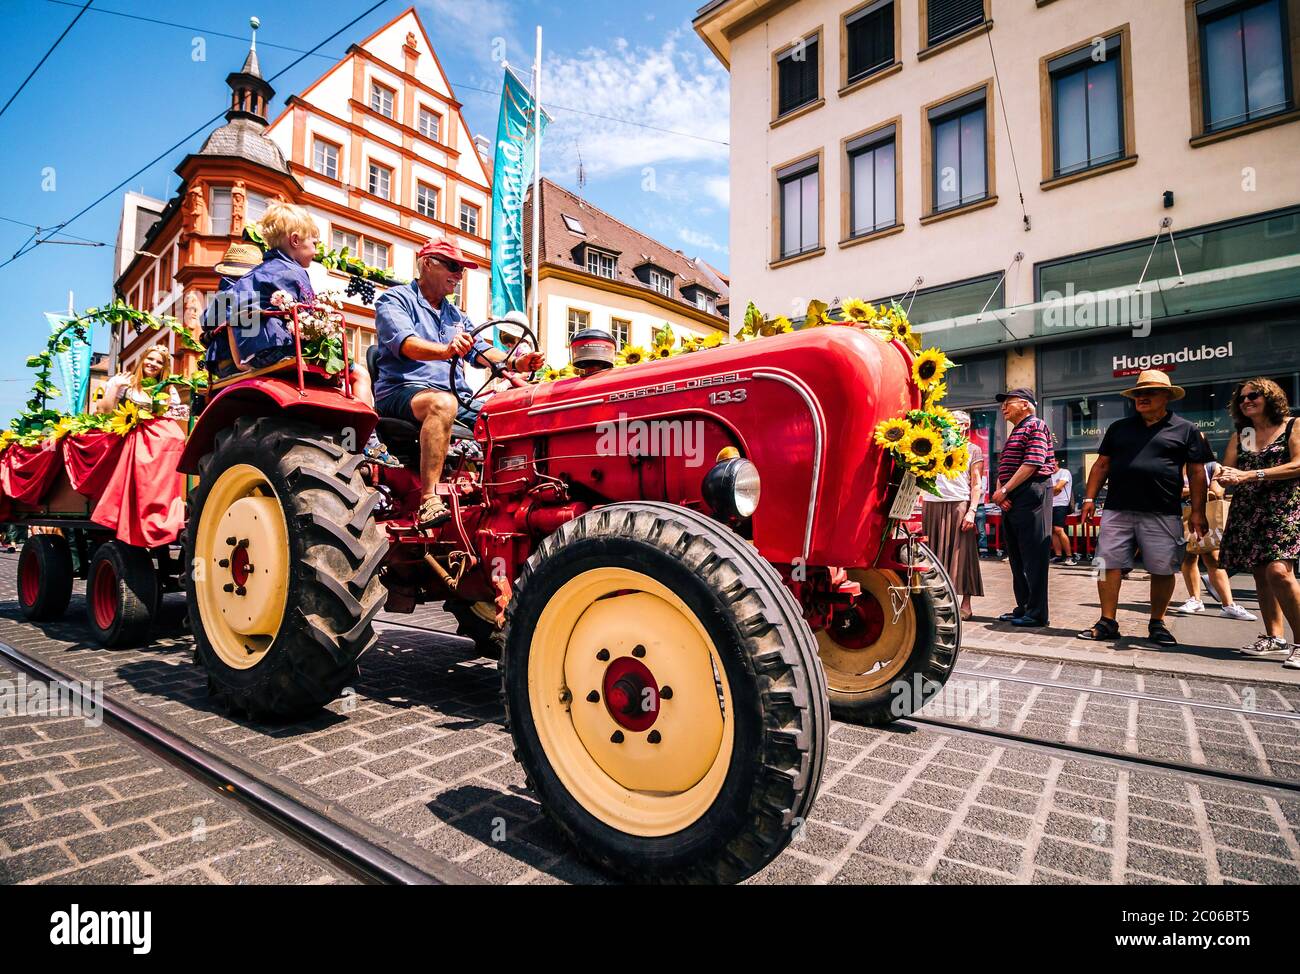 Vieux tracteur rouge décoré de façon traditionnelle lors du défilé d'ouverture du festival d'été. Kiliani est un immense festival folklorique de 2 semaines avec de la bière et de la musique de laiton. Banque D'Images